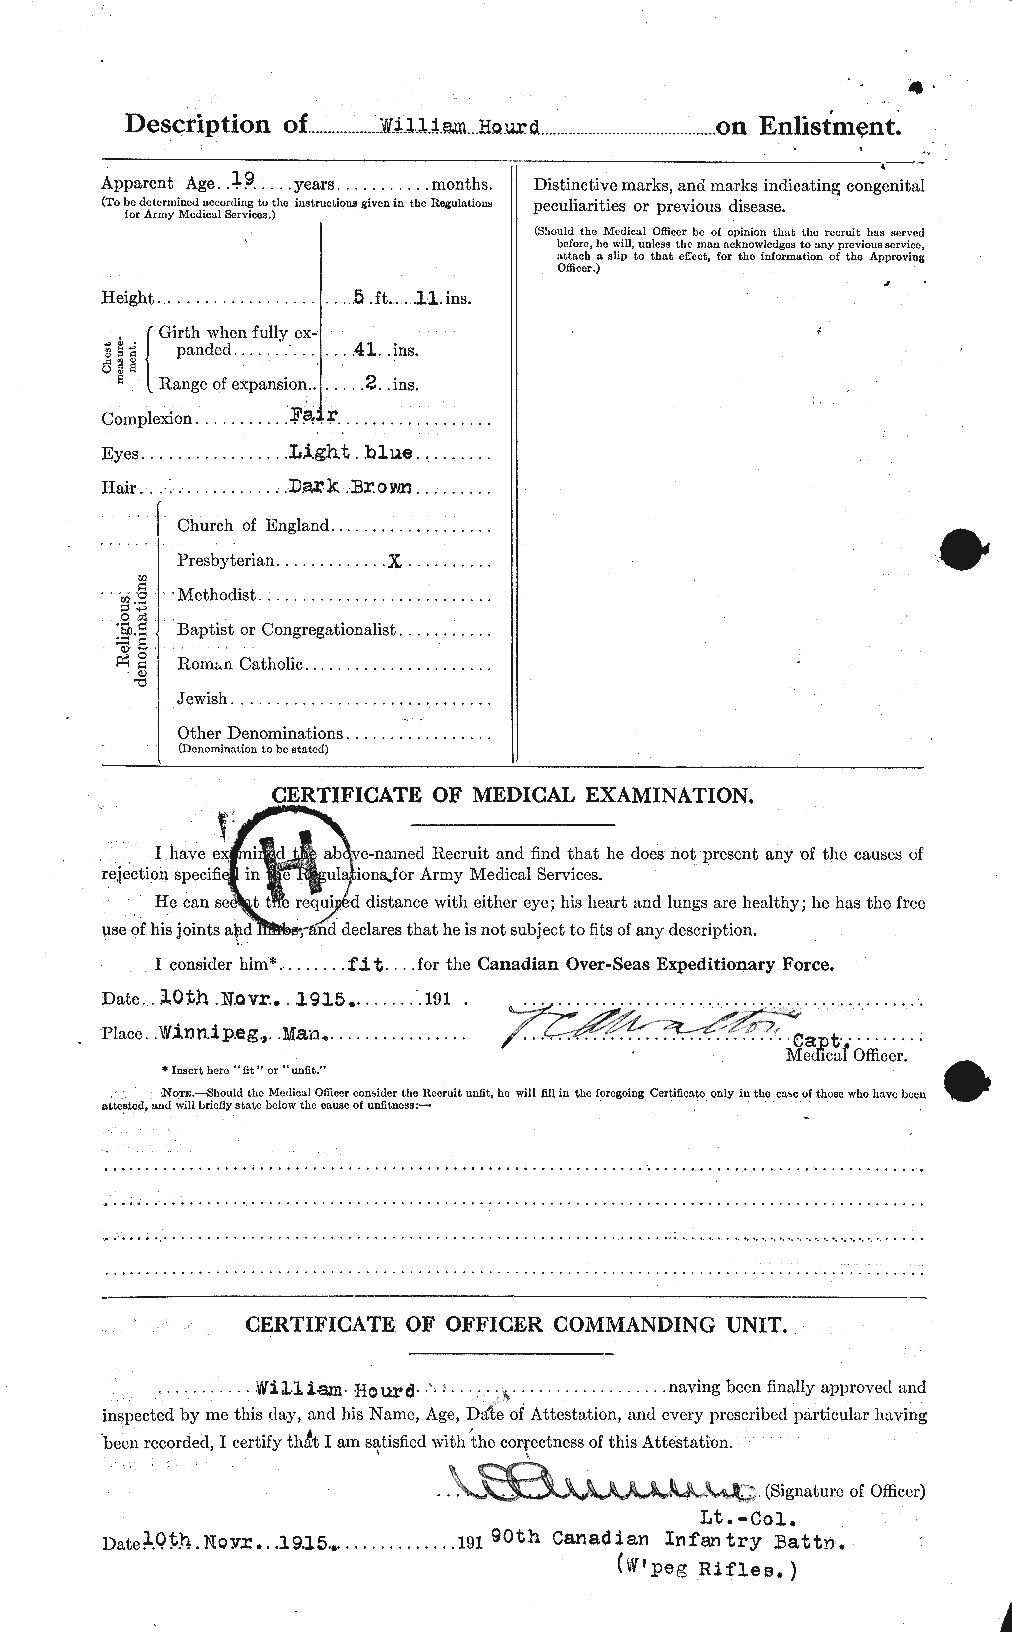 Dossiers du Personnel de la Première Guerre mondiale - CEC 400560b